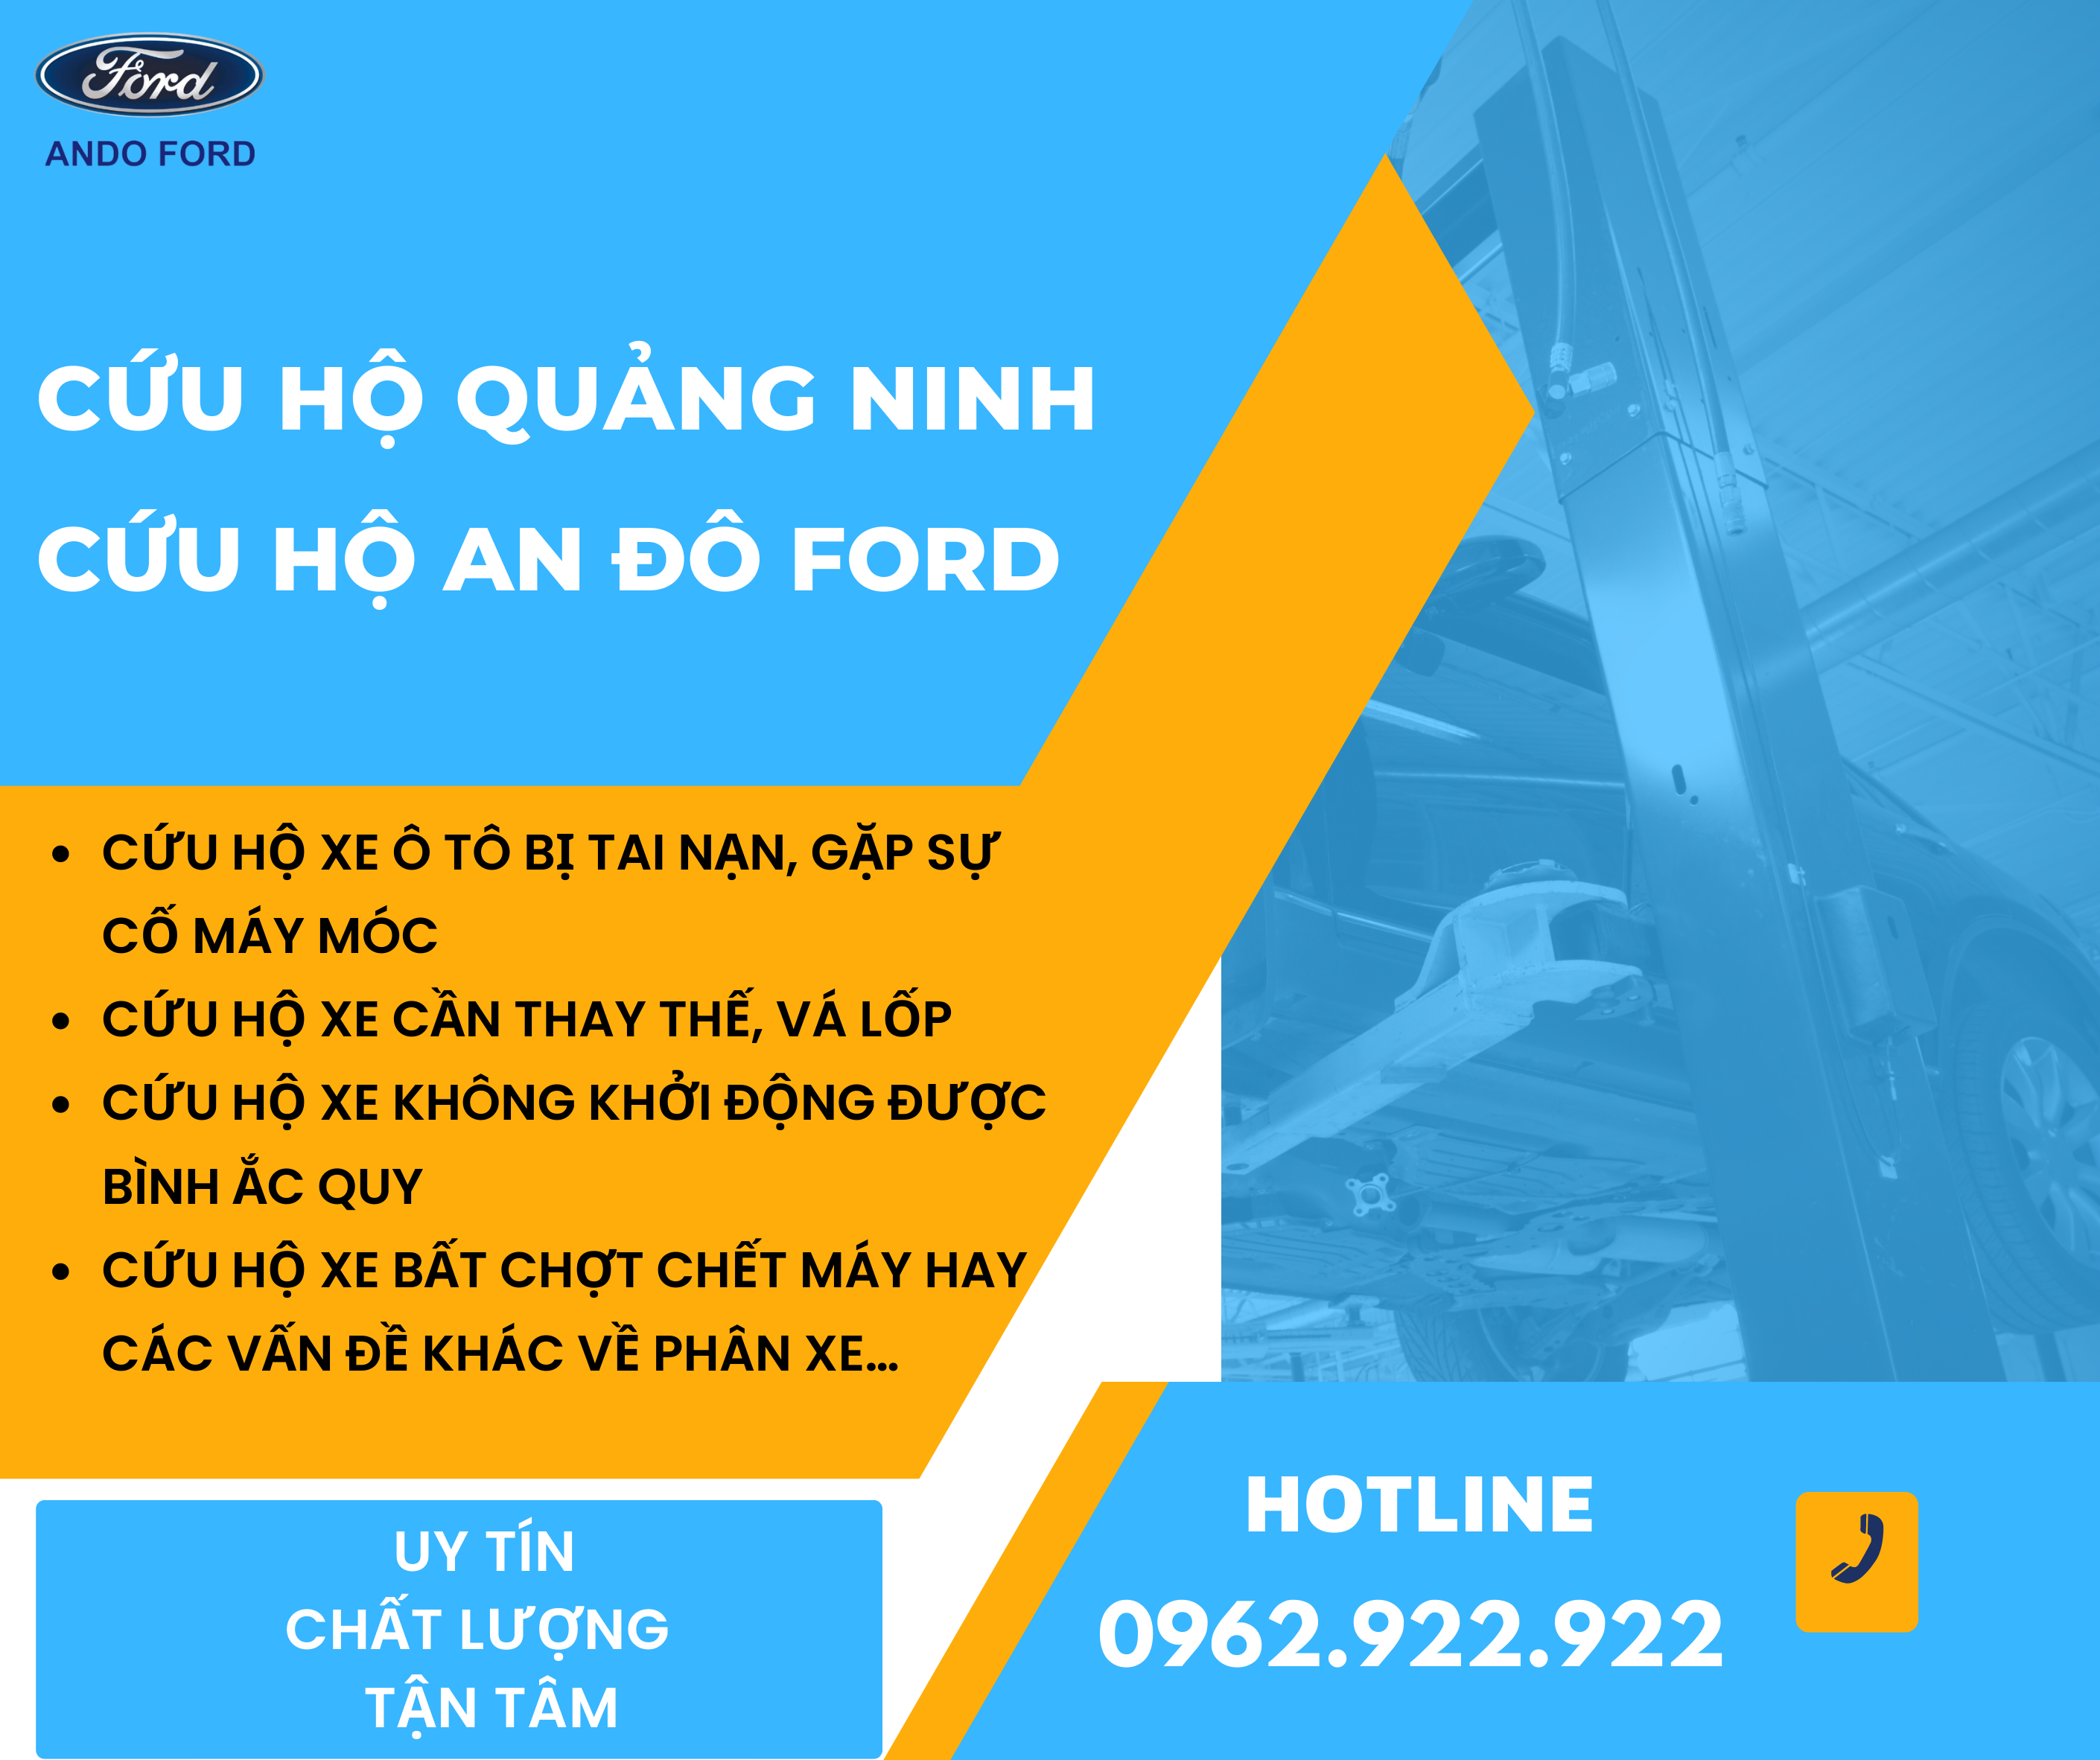 Cứu hộ Quảng Ninh – Cứu hộ An Đô Ford